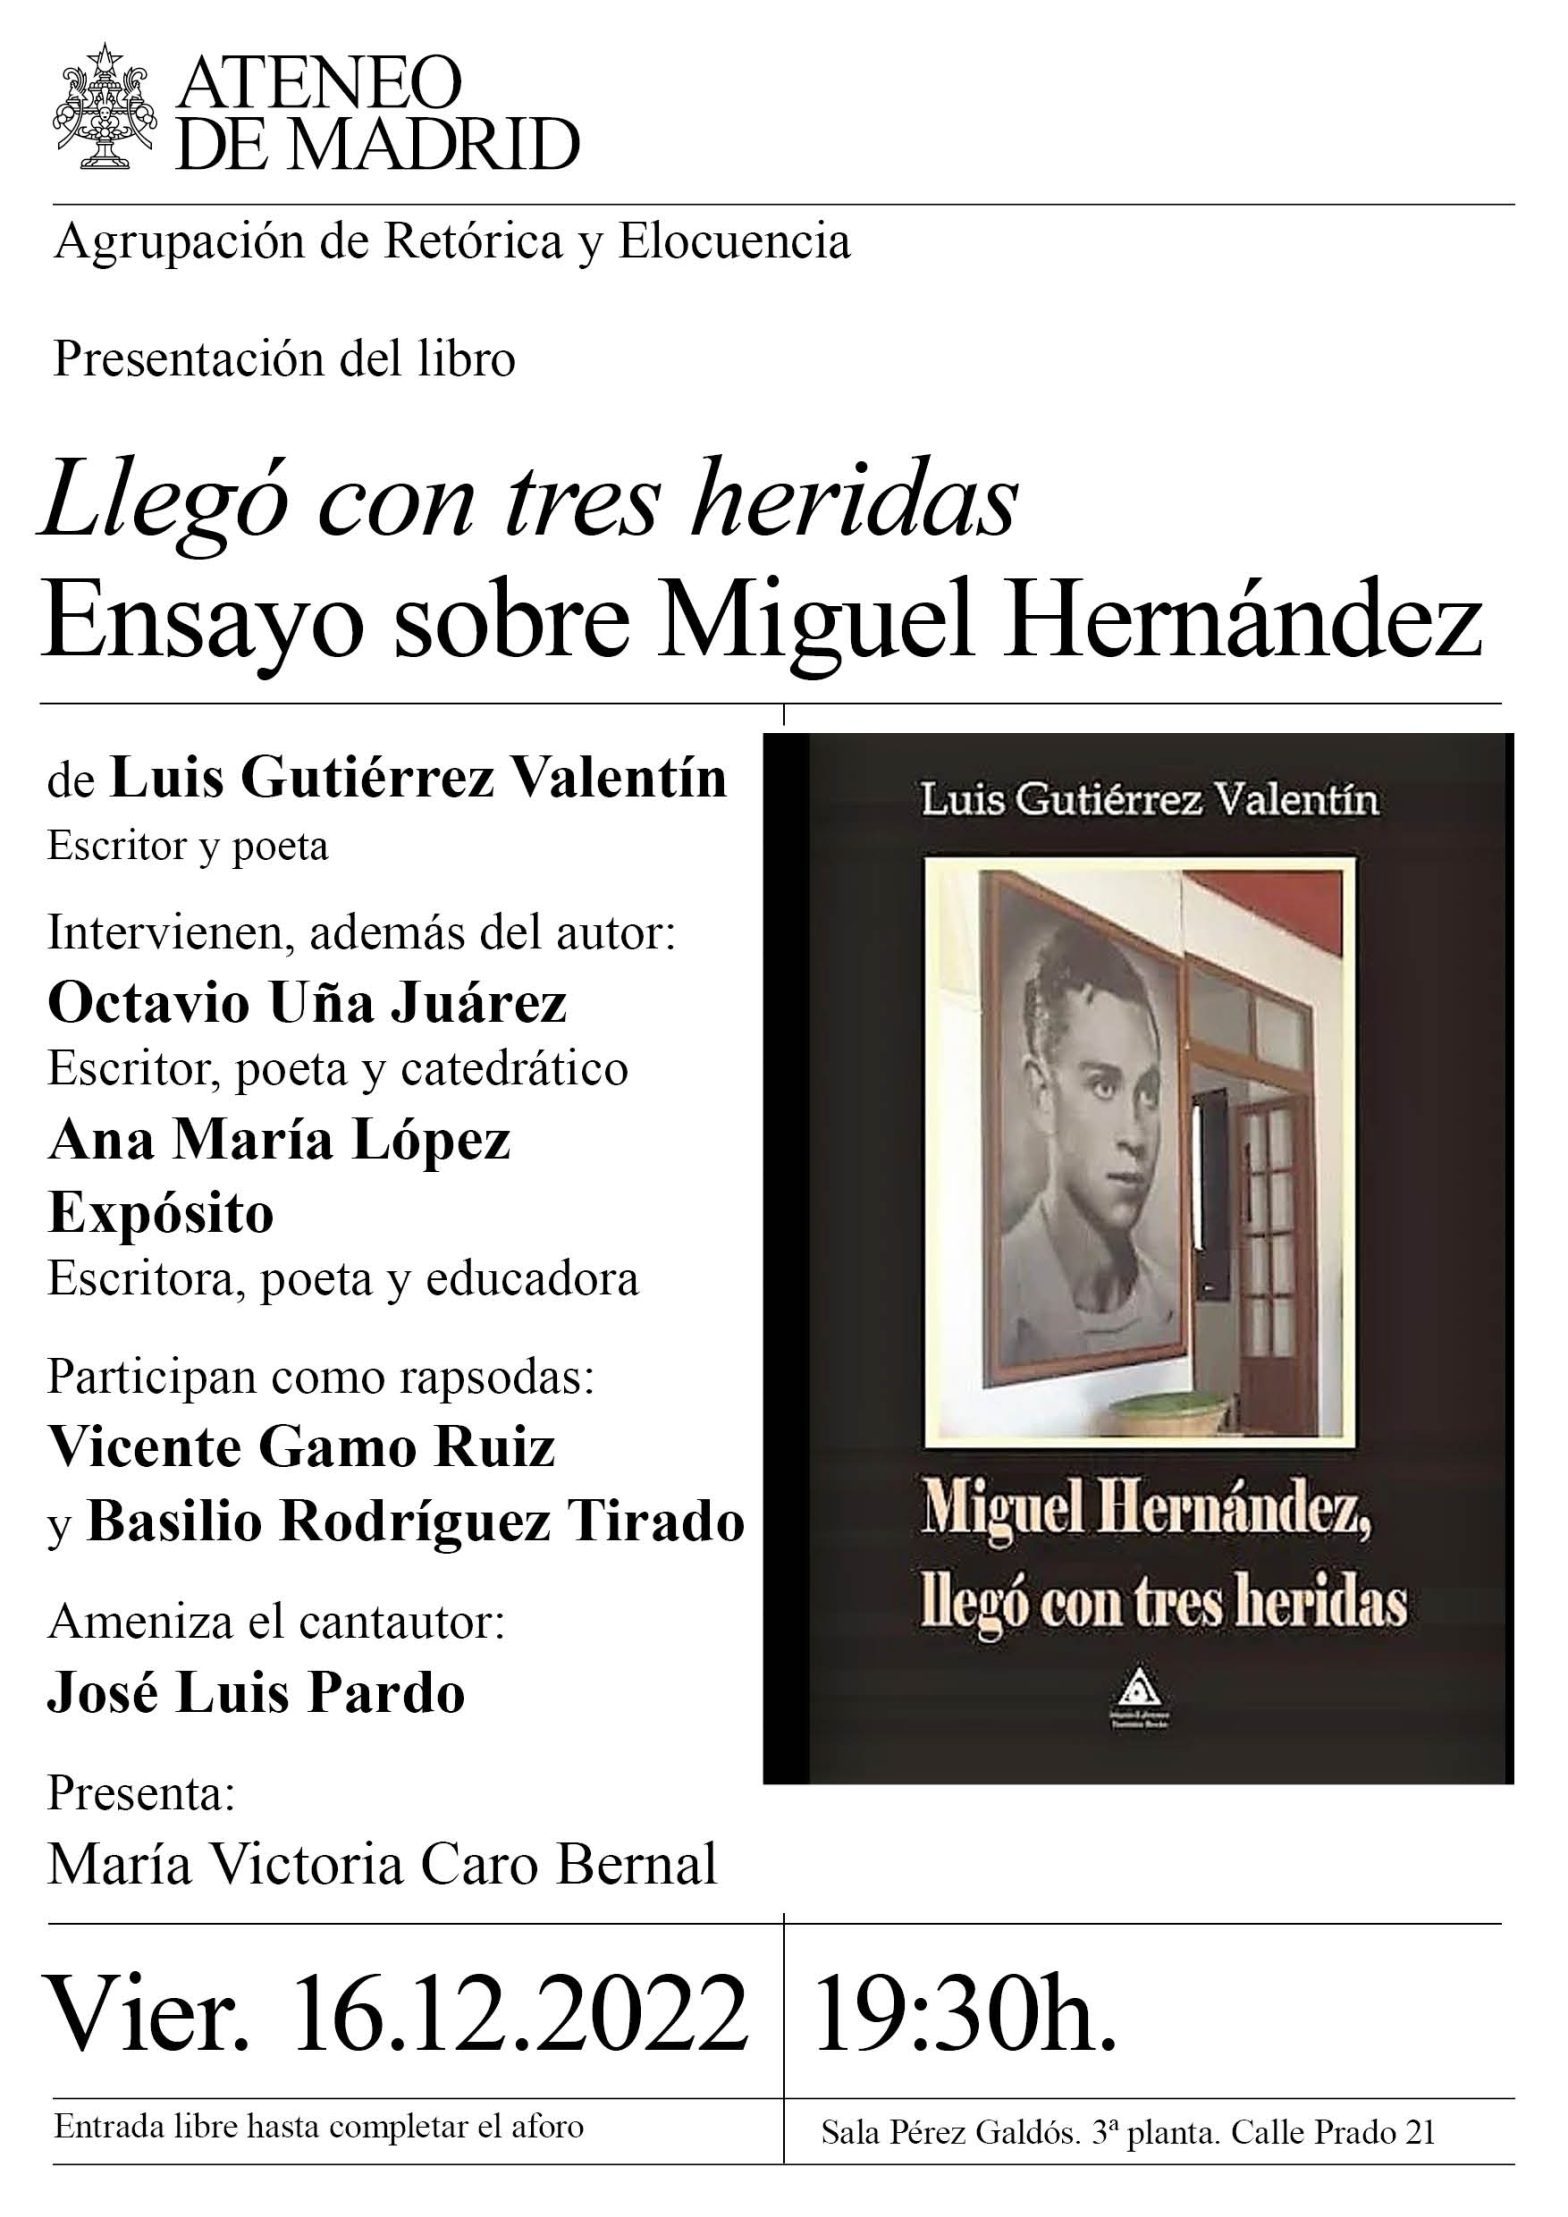 Miguel Hernandez. Las Tres Heridas